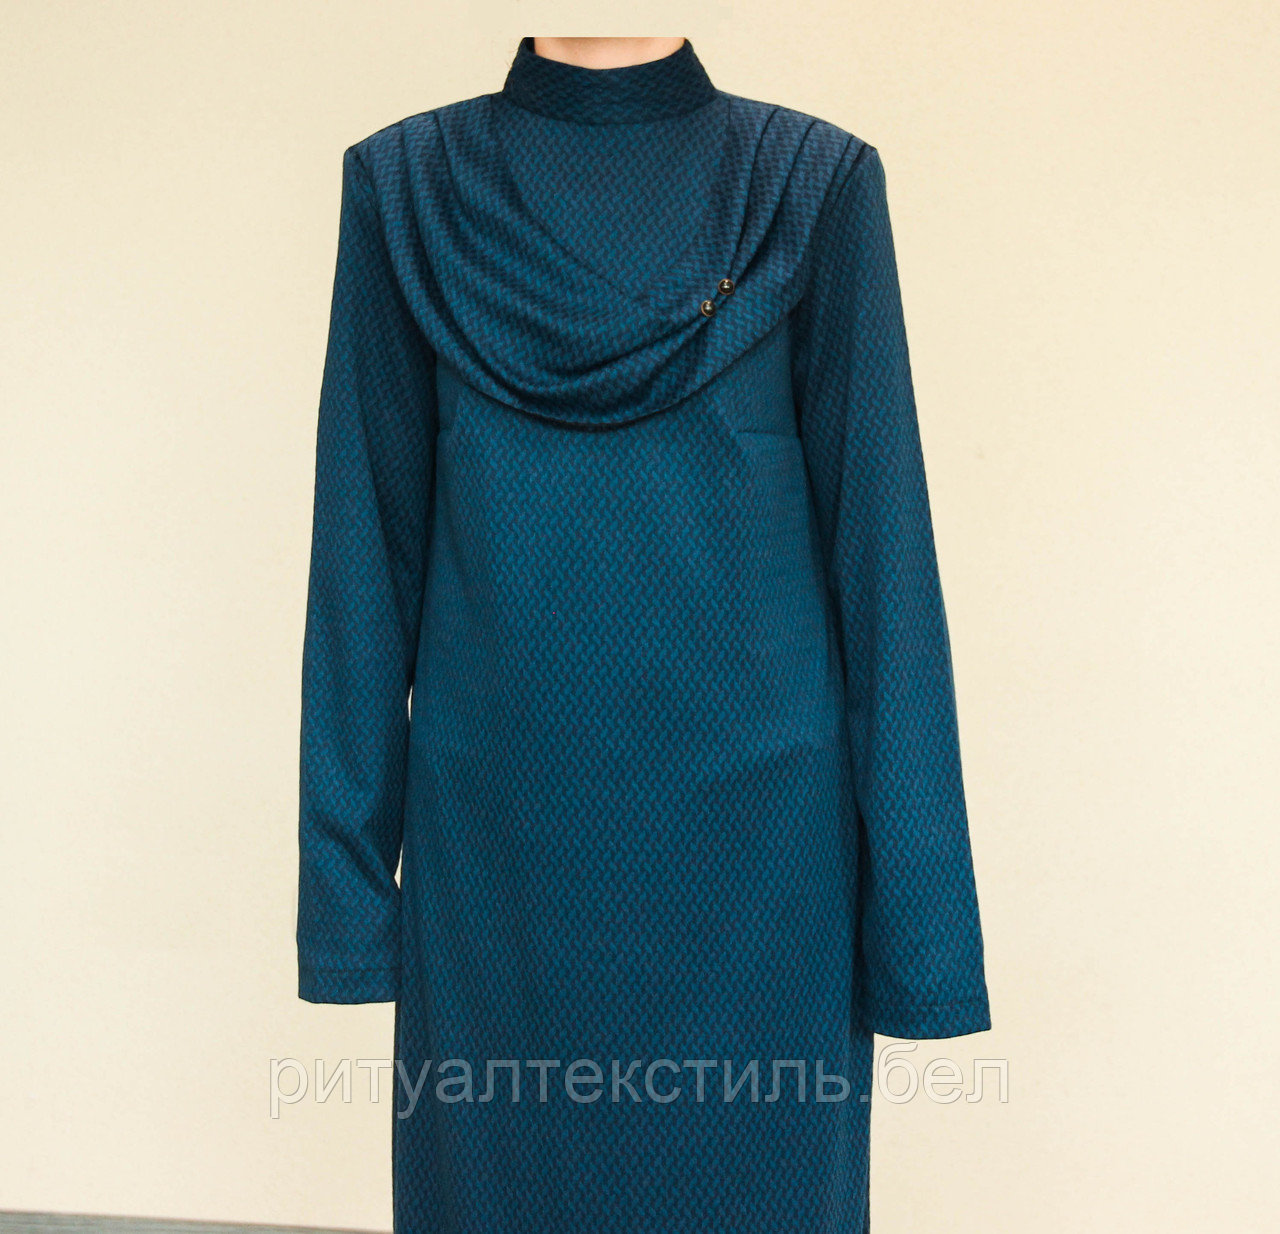 ОПТ. Платье женское  ритуальное синее с шалью